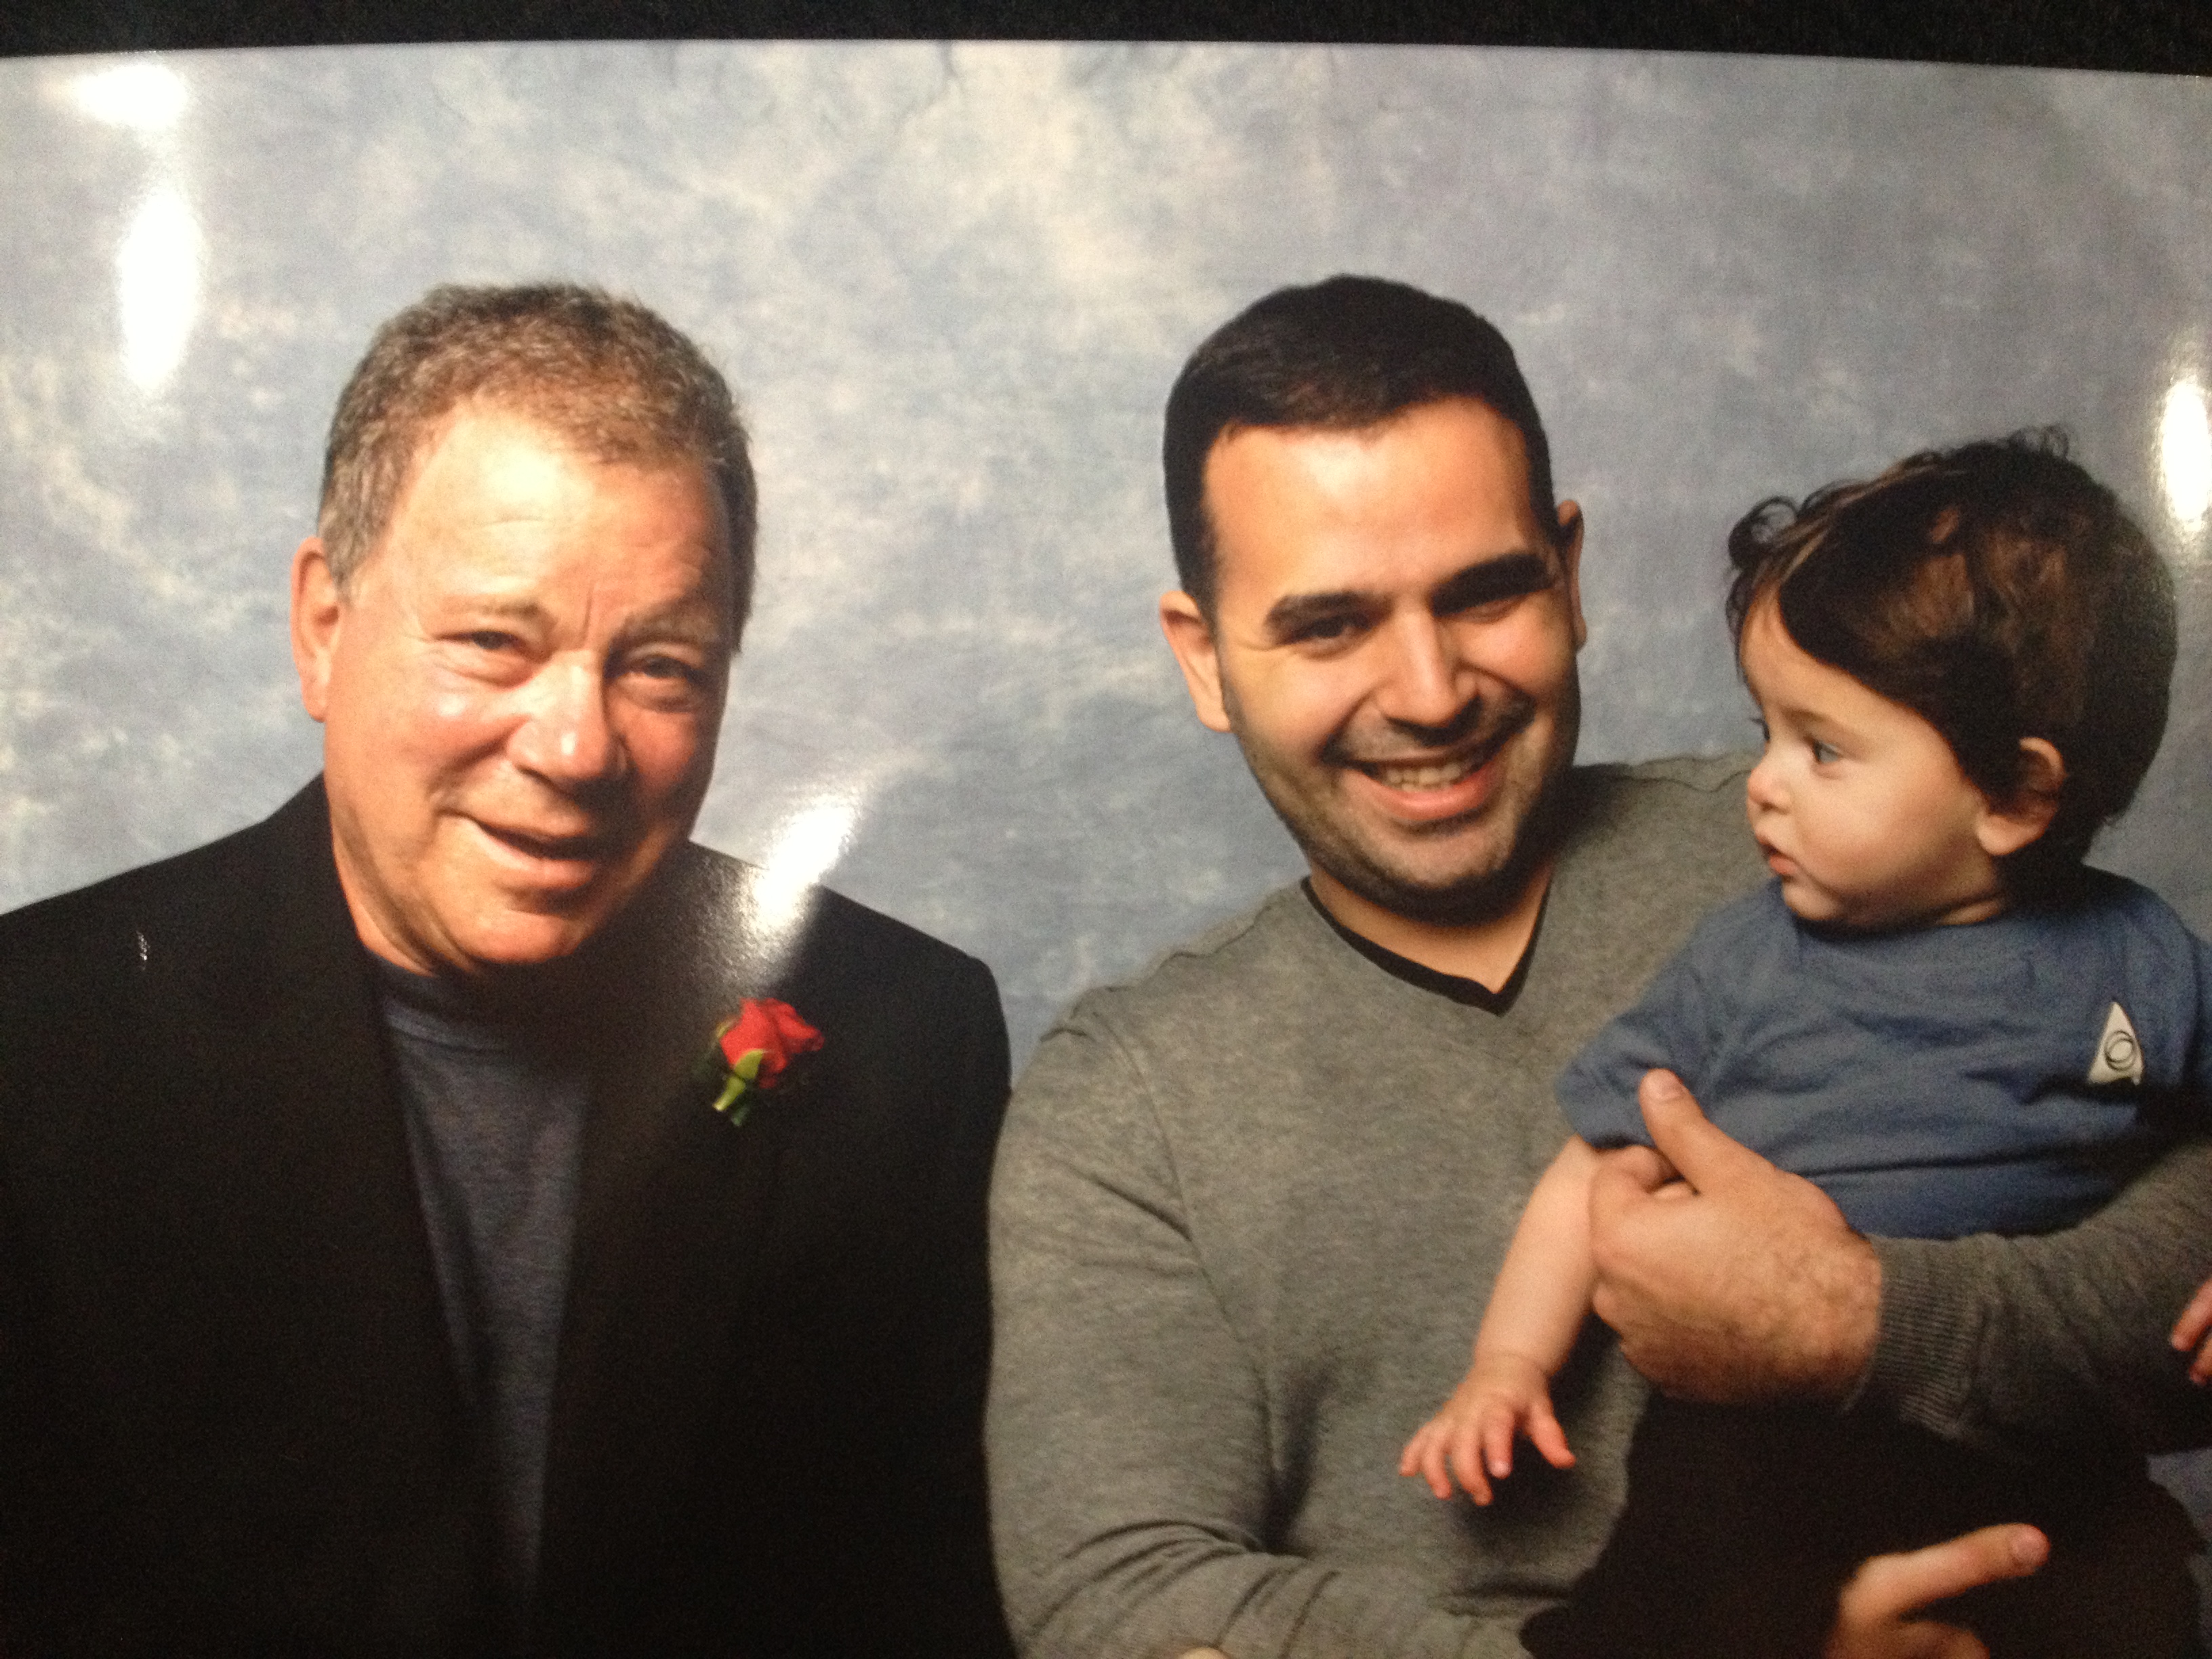 Image of Willam Shatner and Carlos Miranda with Carlos' Child